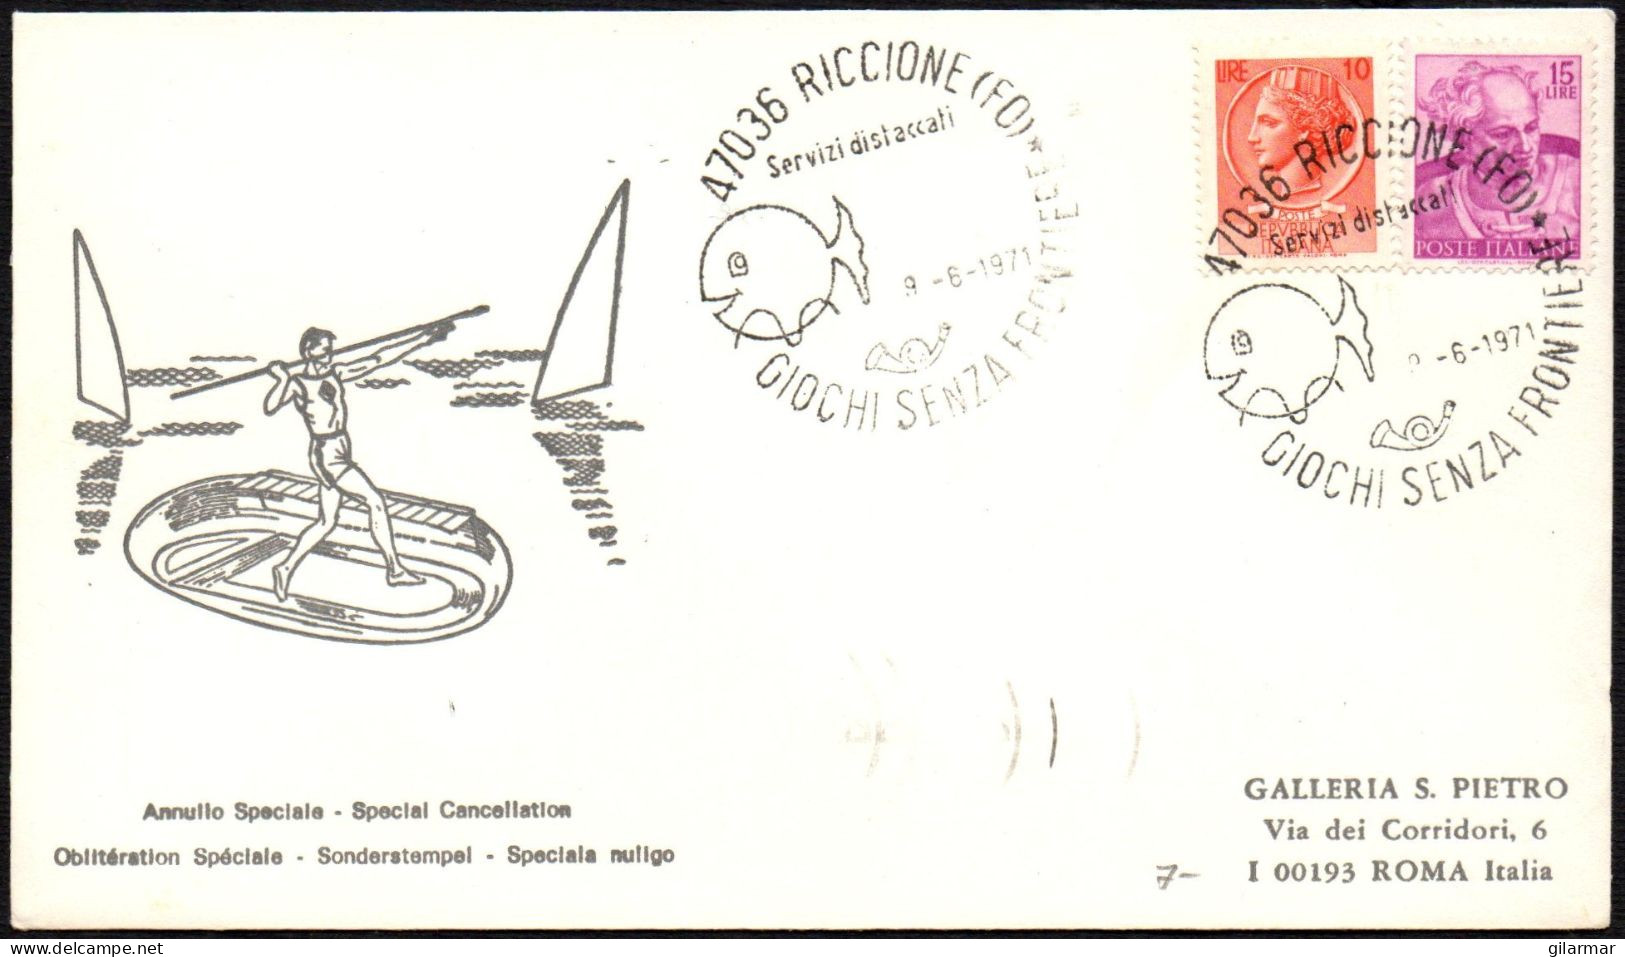 ITALIA RICCIONE (FO) 1971 - GIOCHI SENZA FRONTIERE - BUSTA VIAGGIATA - BOLLO ARRIVO ROMA RISPARMIO POSTALE - M - Ohne Zuordnung